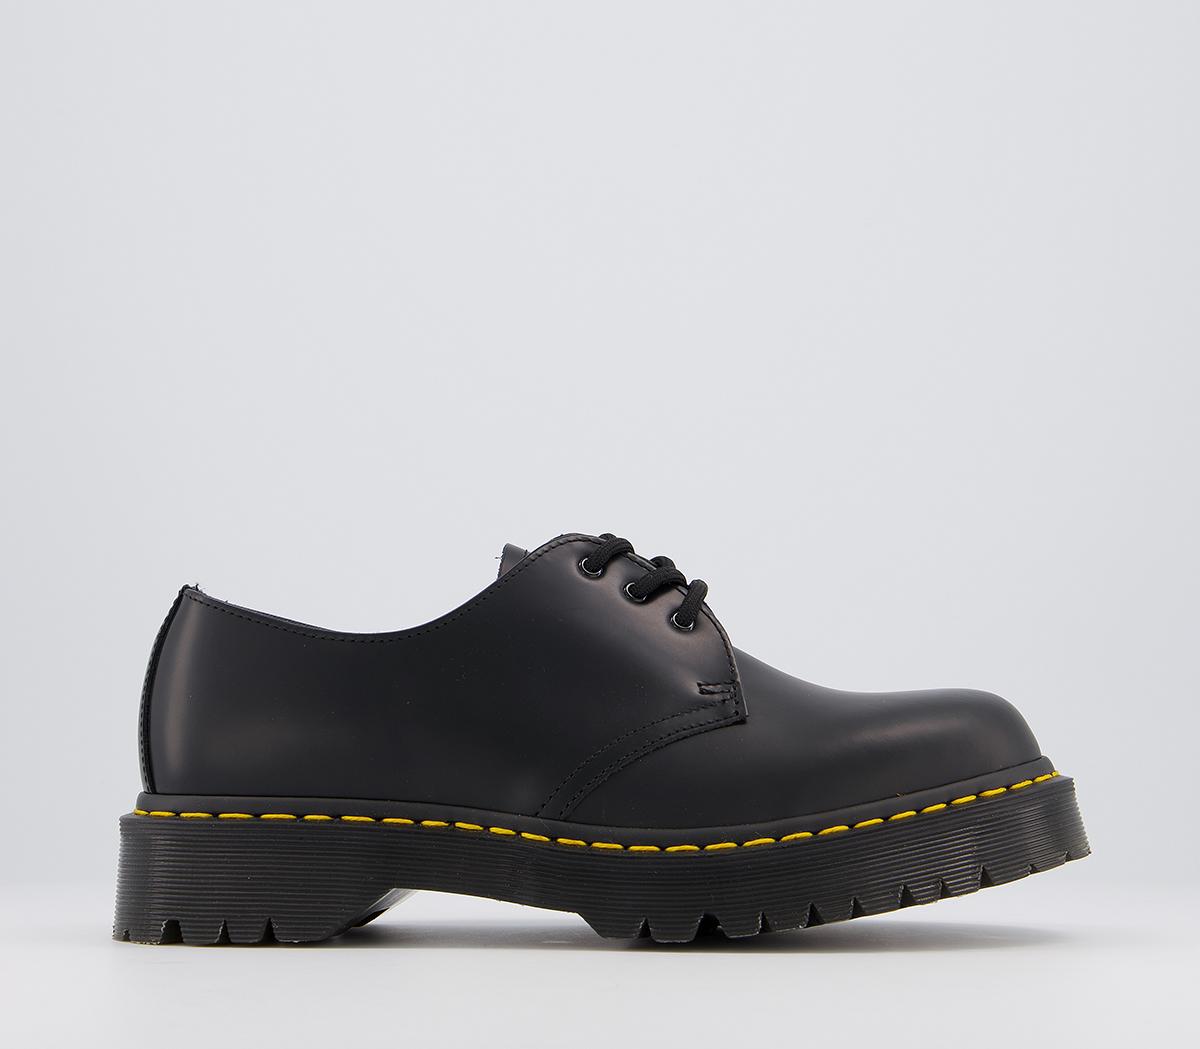 Dr. Martens 1461 Bex Shoes Black - Men’s Smart Shoes